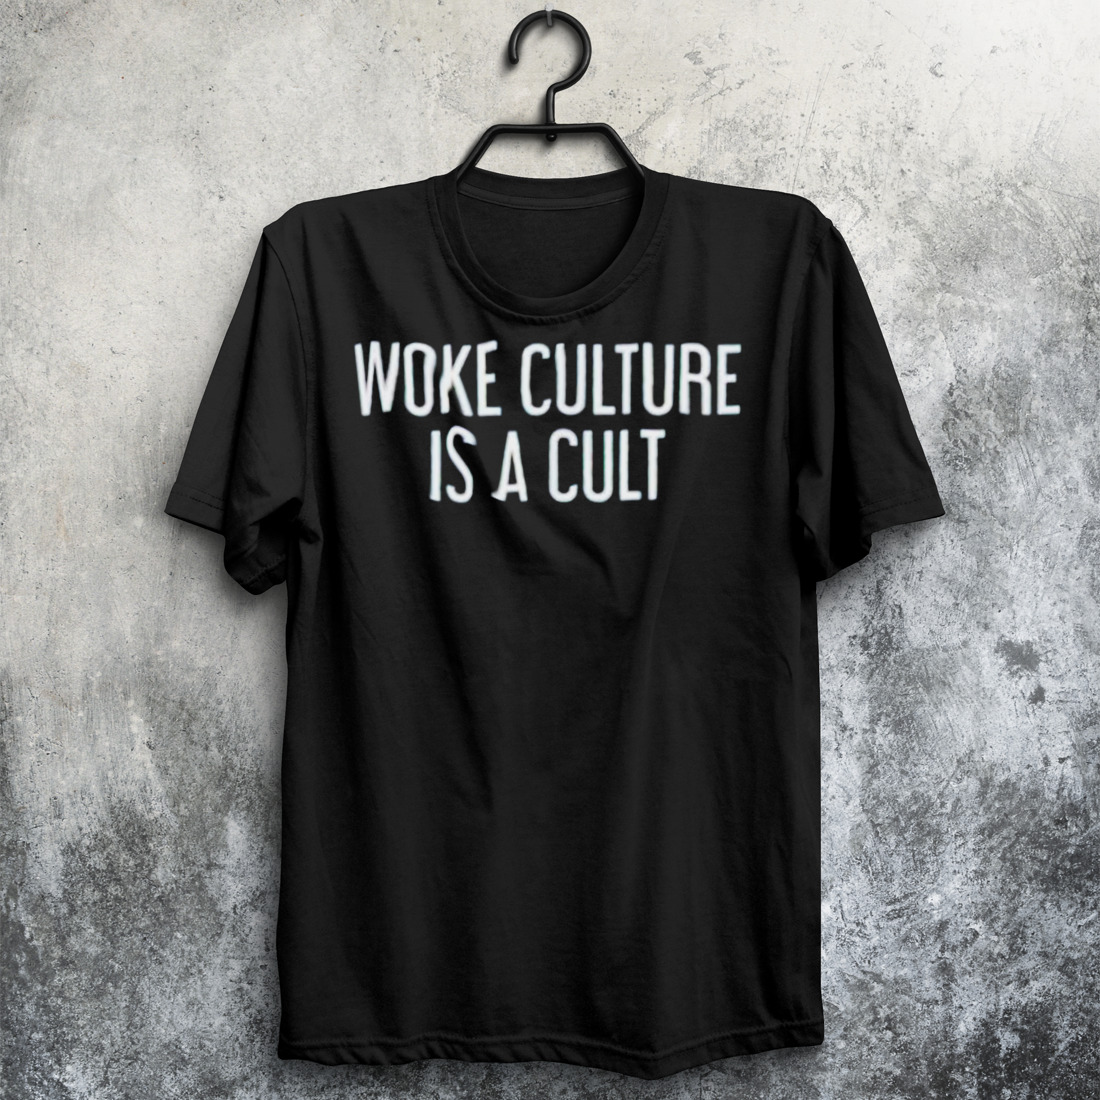 Woke culture is a cult shirt